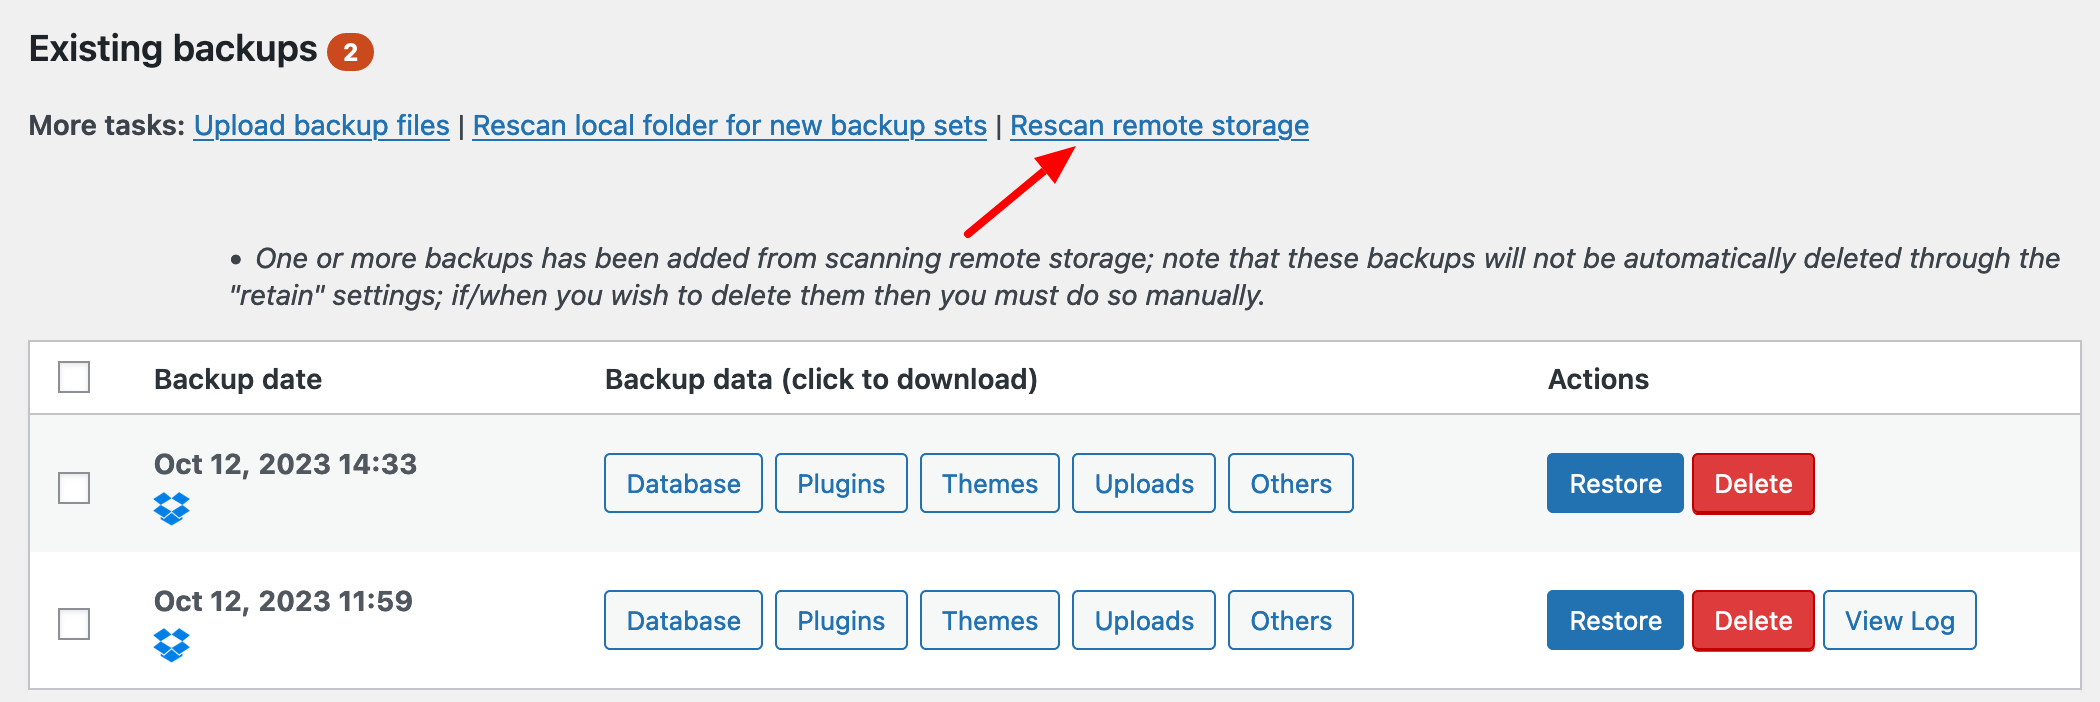 Scanning remote storage for backups.